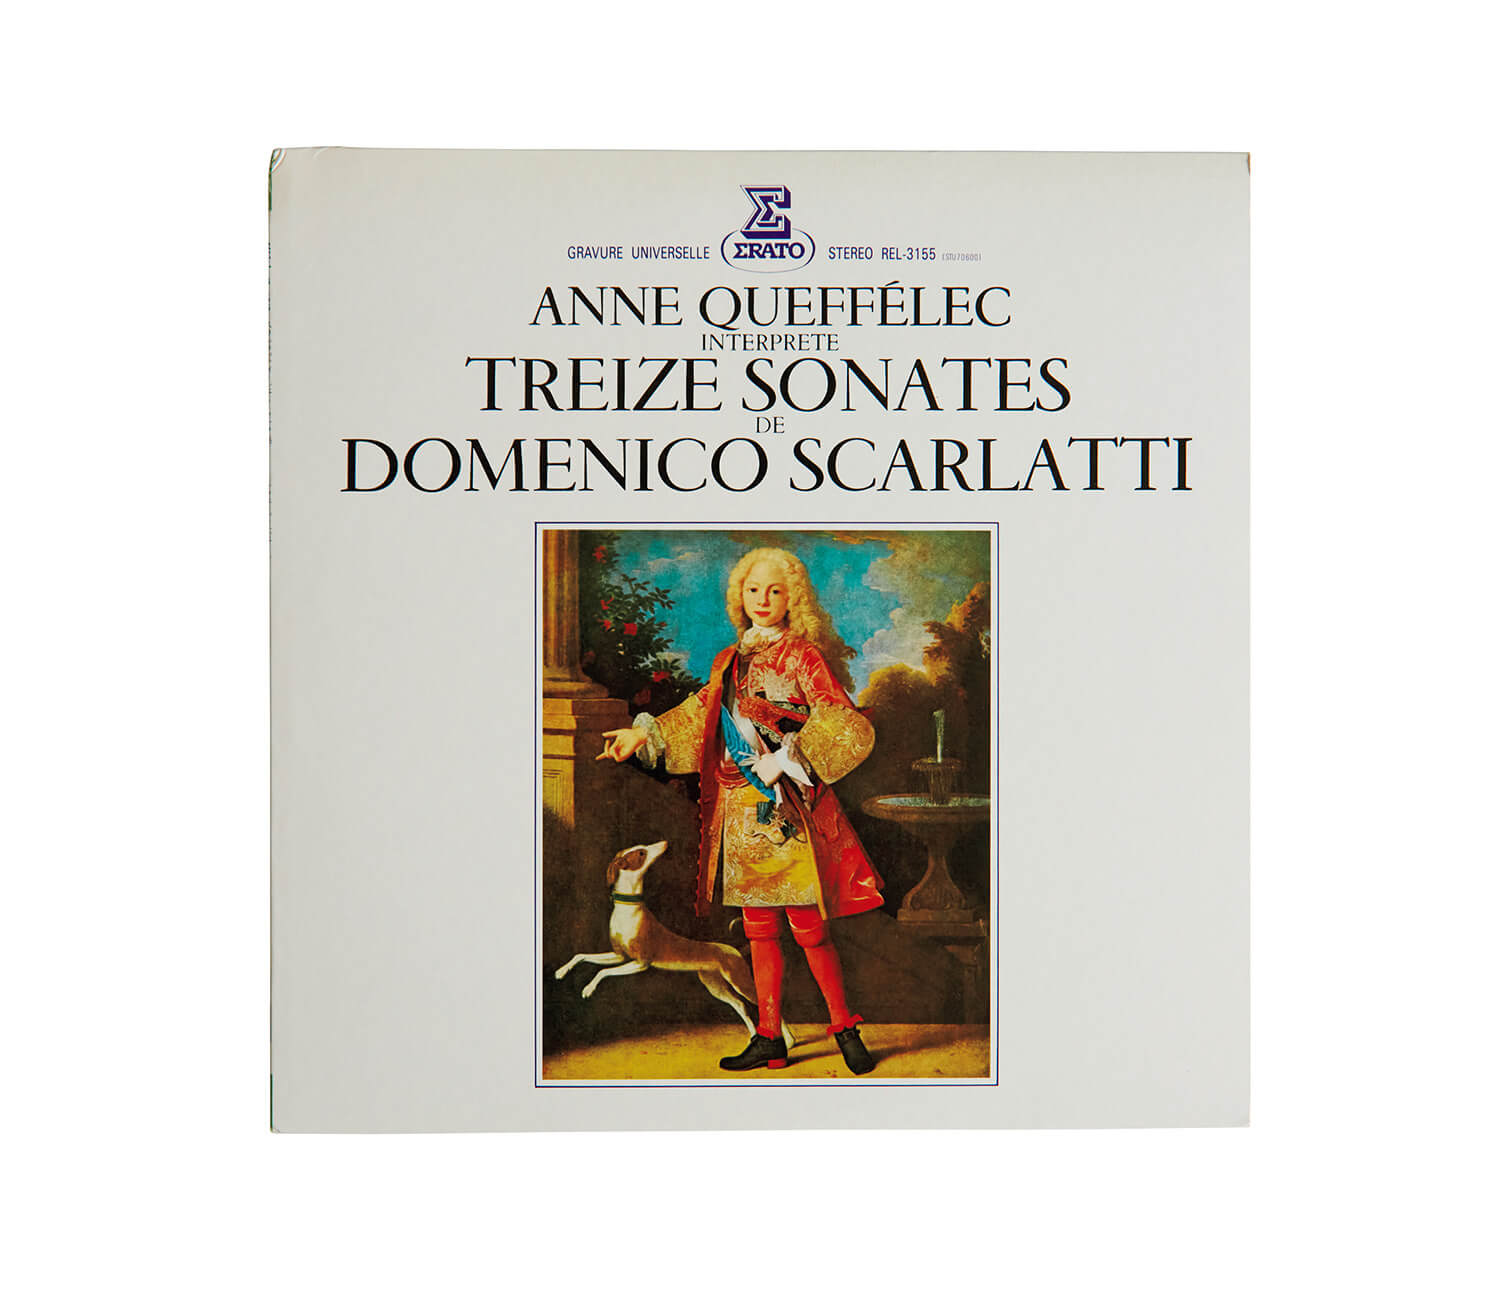 アンナ・ケフェレックが演奏した、ドメニコ・スカルラッティ「ピアノ・ソナタ集」レコードジャケット